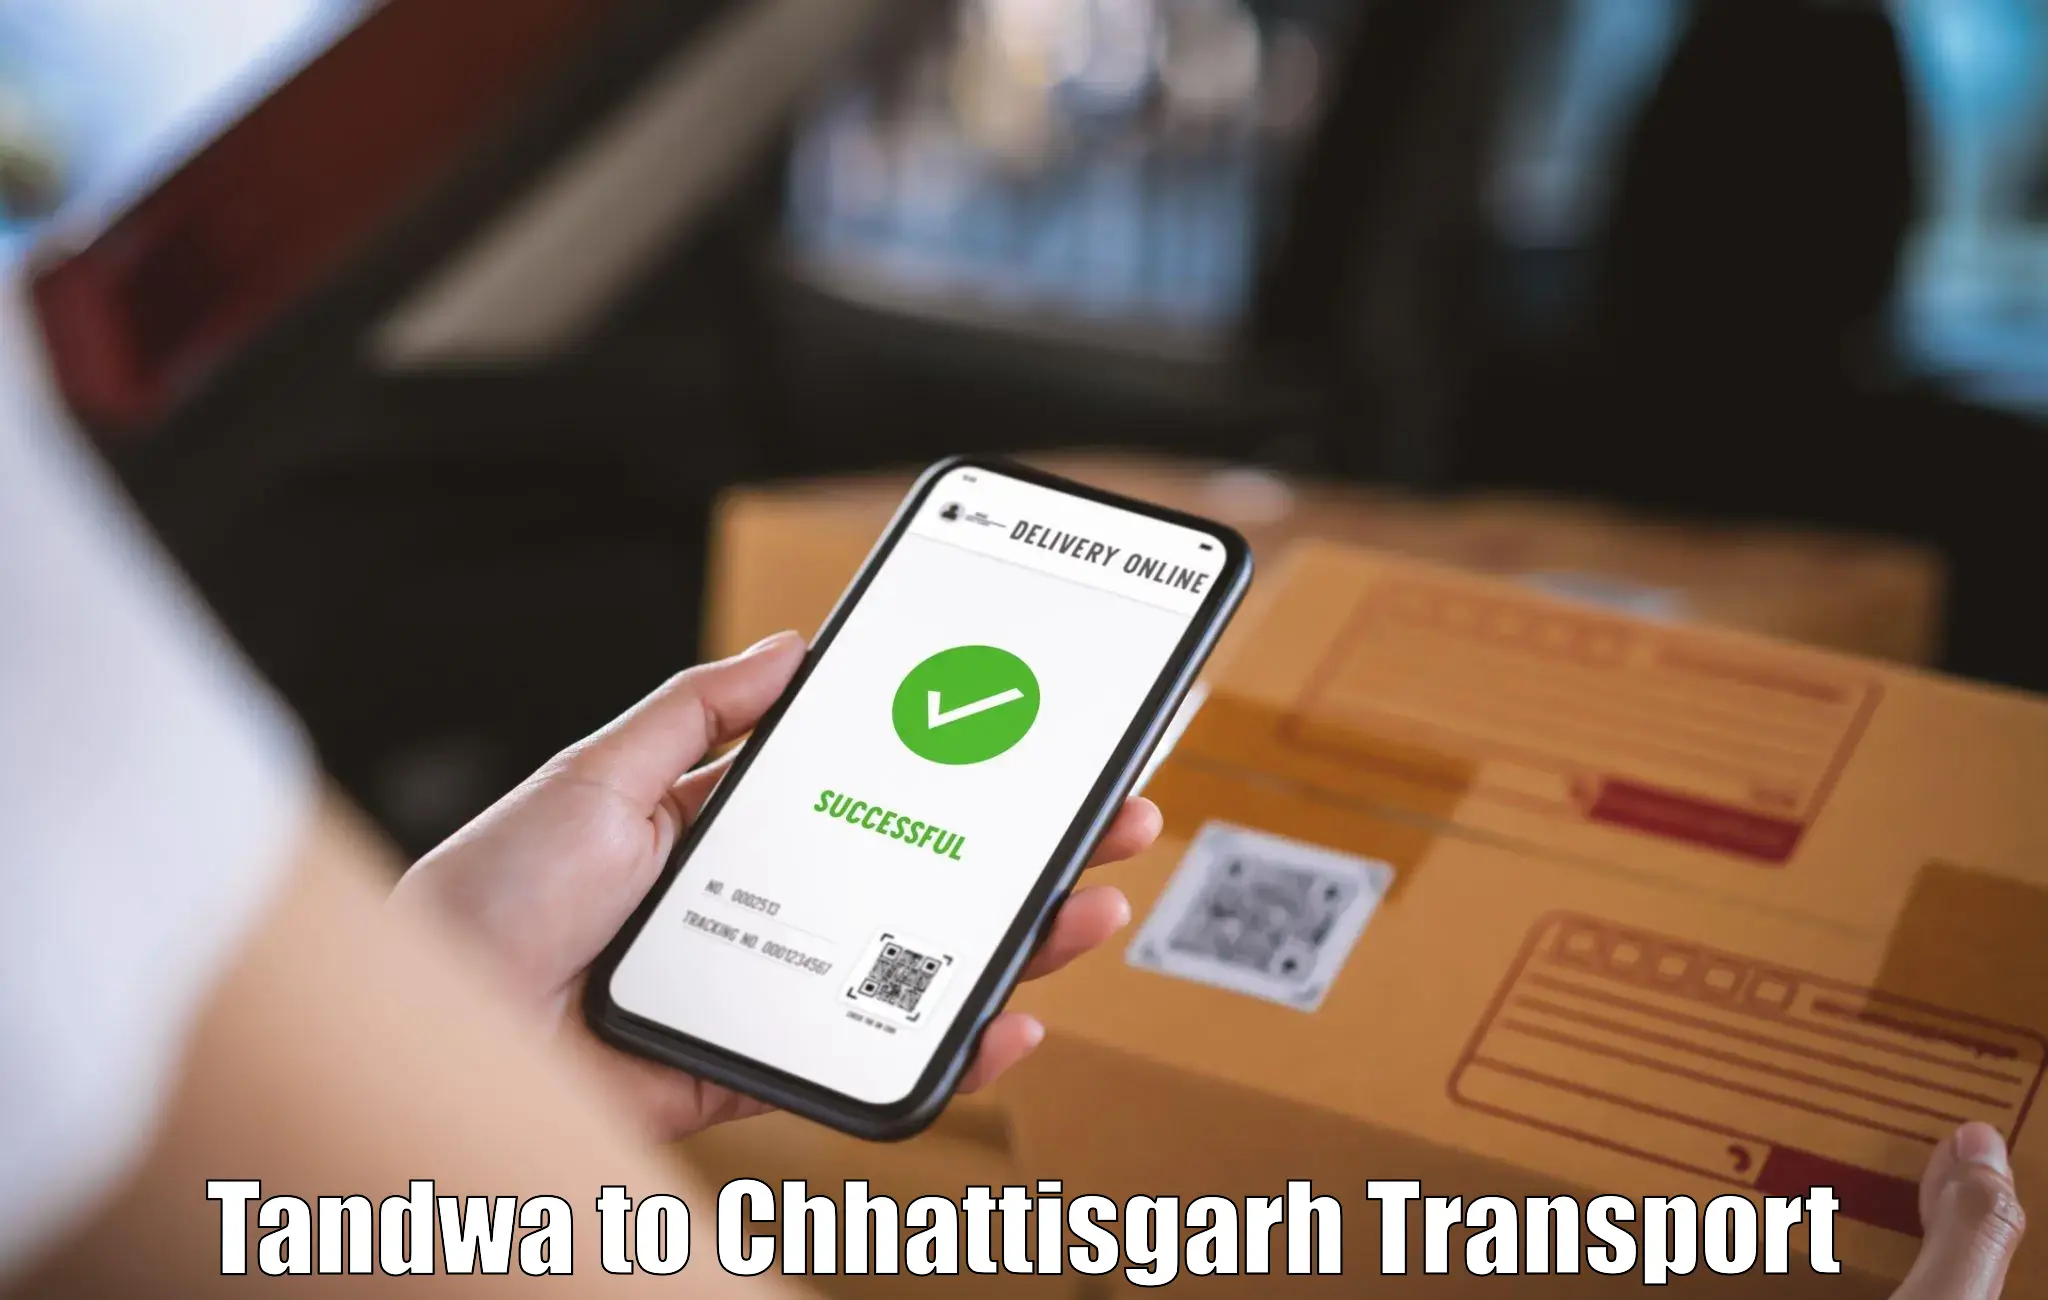 Online transport booking Tandwa to Raigarh Chhattisgarh